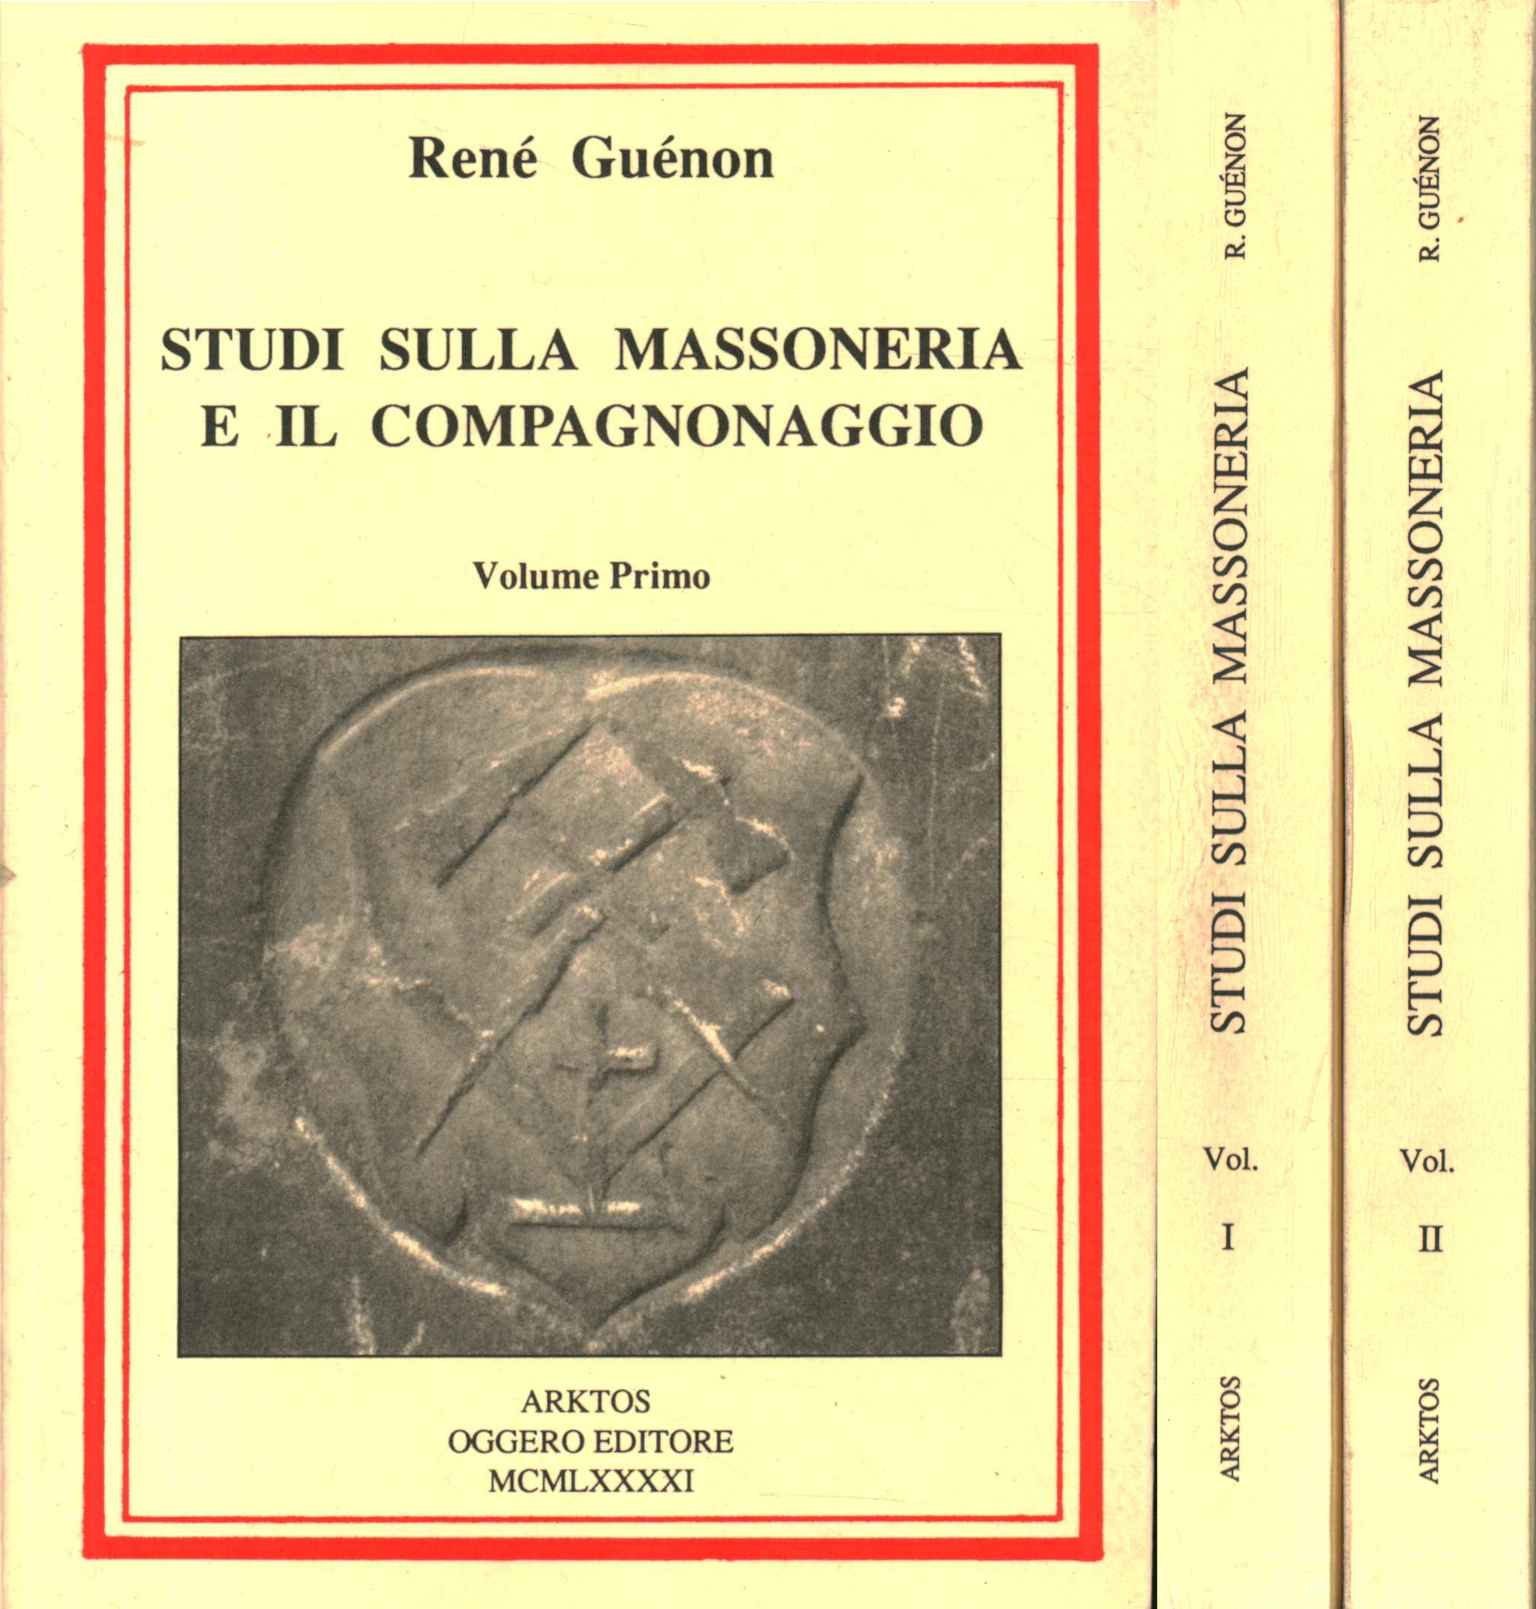 Studi sulla massoneria e il compagnonaggio (2 Volumi) - René Guénon [1991]